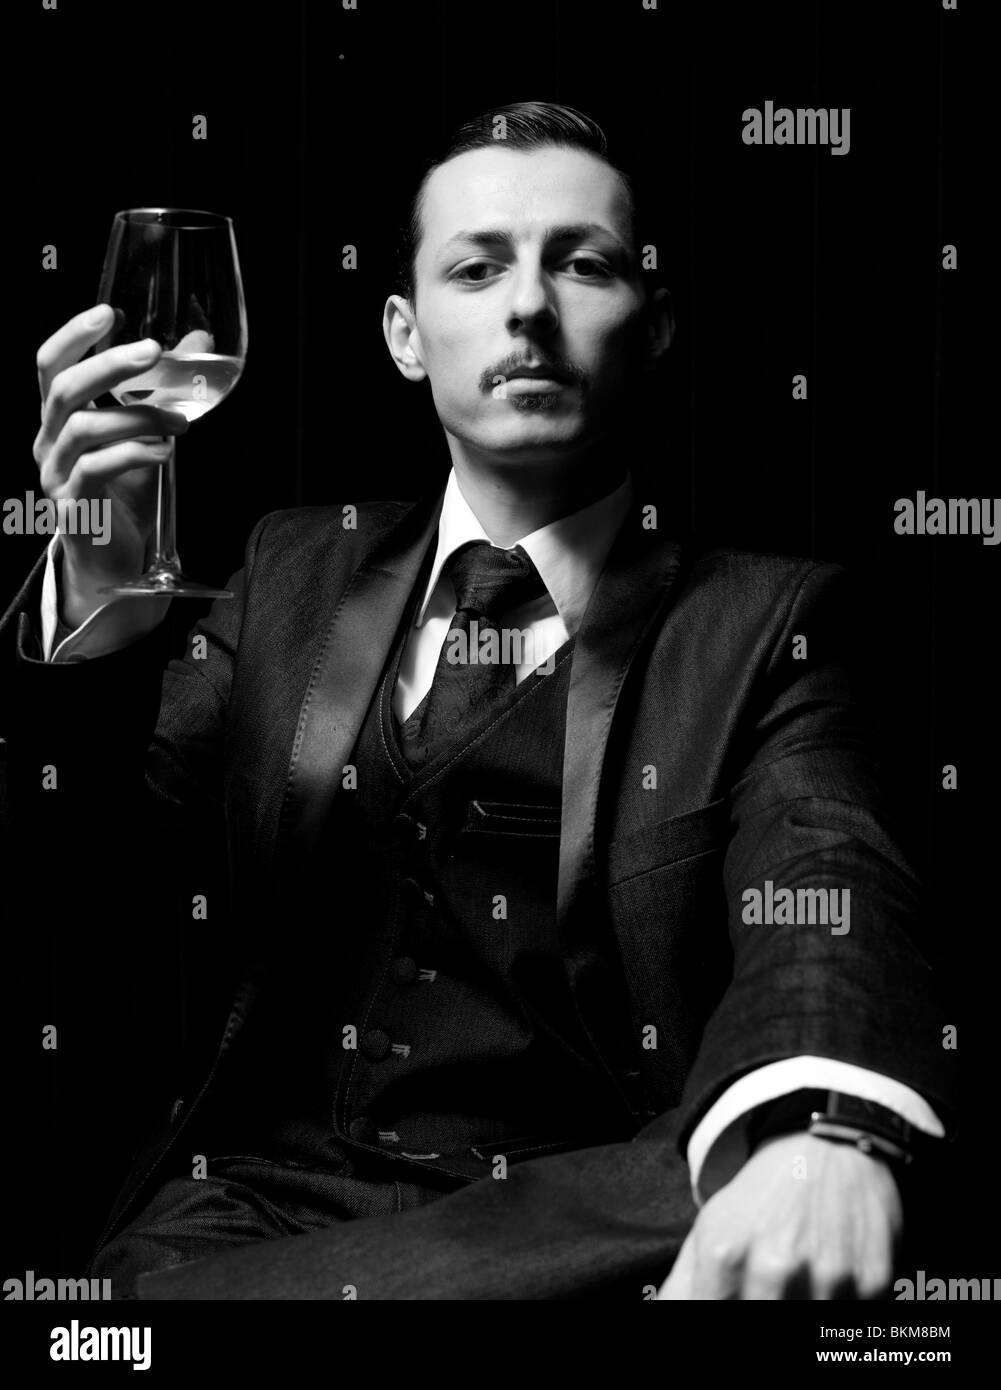 Portrait noir et blanc d'un homme solennel élevant un verre de vin blanc, Londres, Angleterre, Royaume-Uni. Banque D'Images